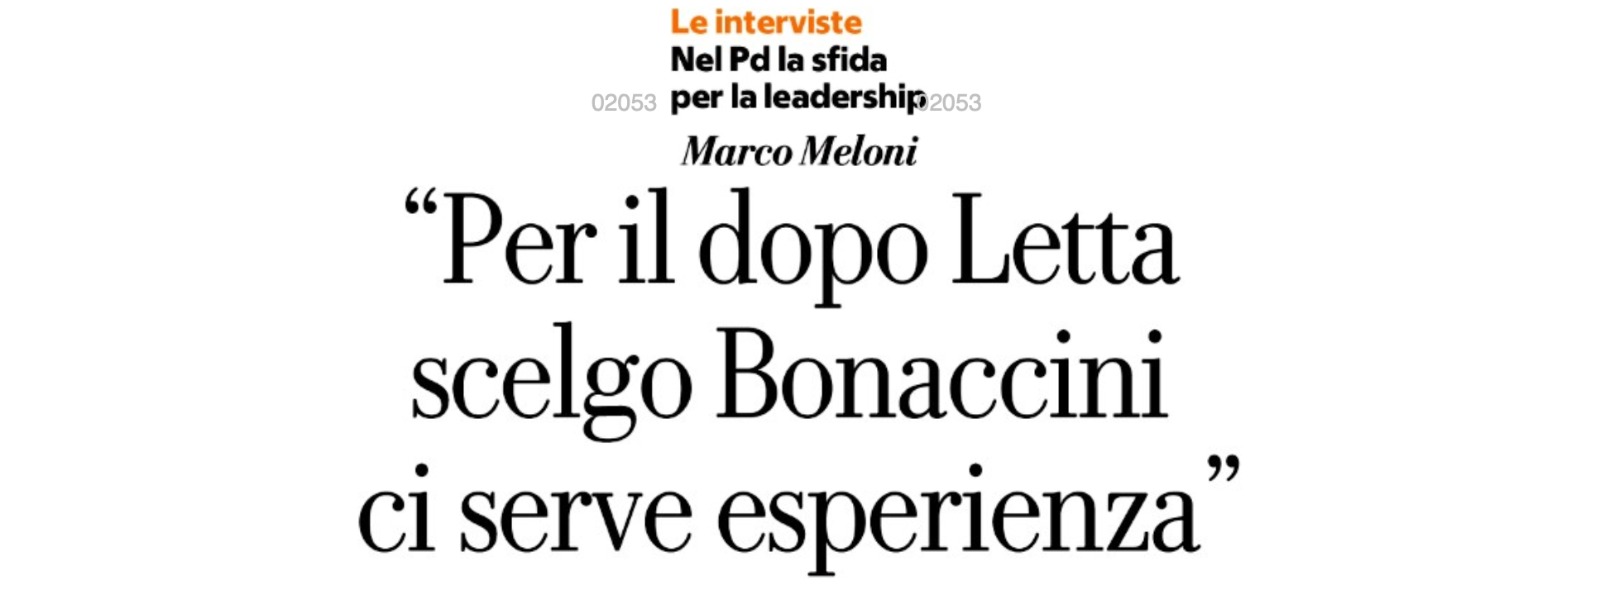 Meloni (PD): “Per il dopo Letta scelgo Bonaccini, ci serve esperienza”